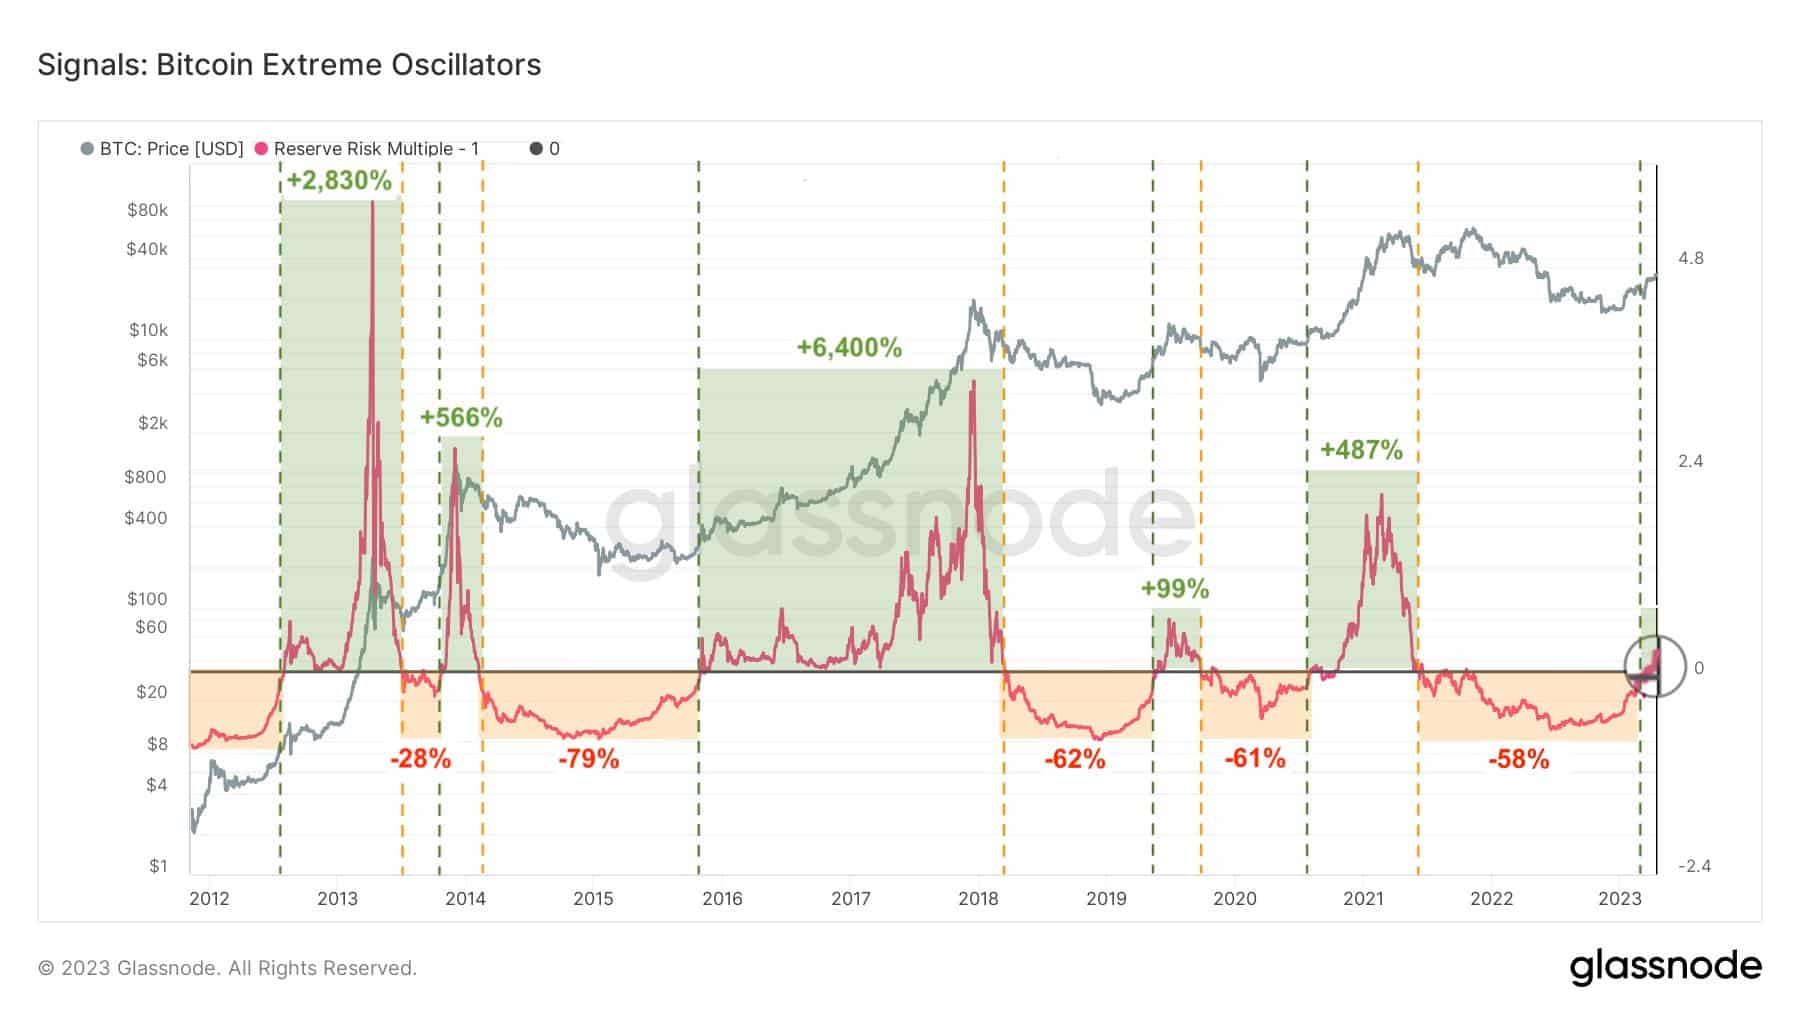 Vývoj ukazatele rezervního rizika u bitcoinu. Kdykoliv se dostal nad 0, tak došlo k masivnímu růstu ceny (zdroj: Twitter / @ali_charts / glassnode).